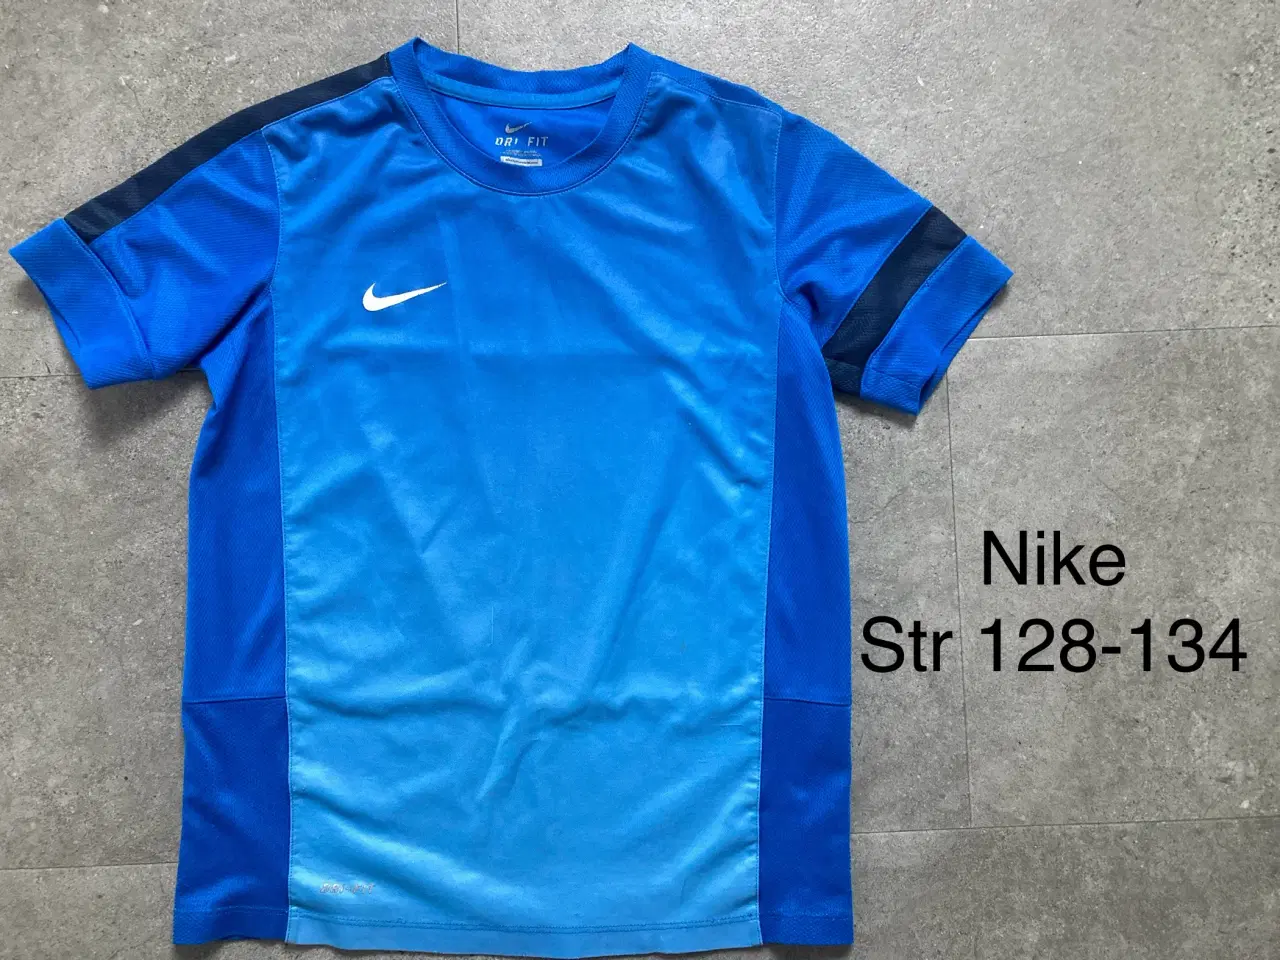 Billede 1 - Str 128-134 Nike t-shirt.